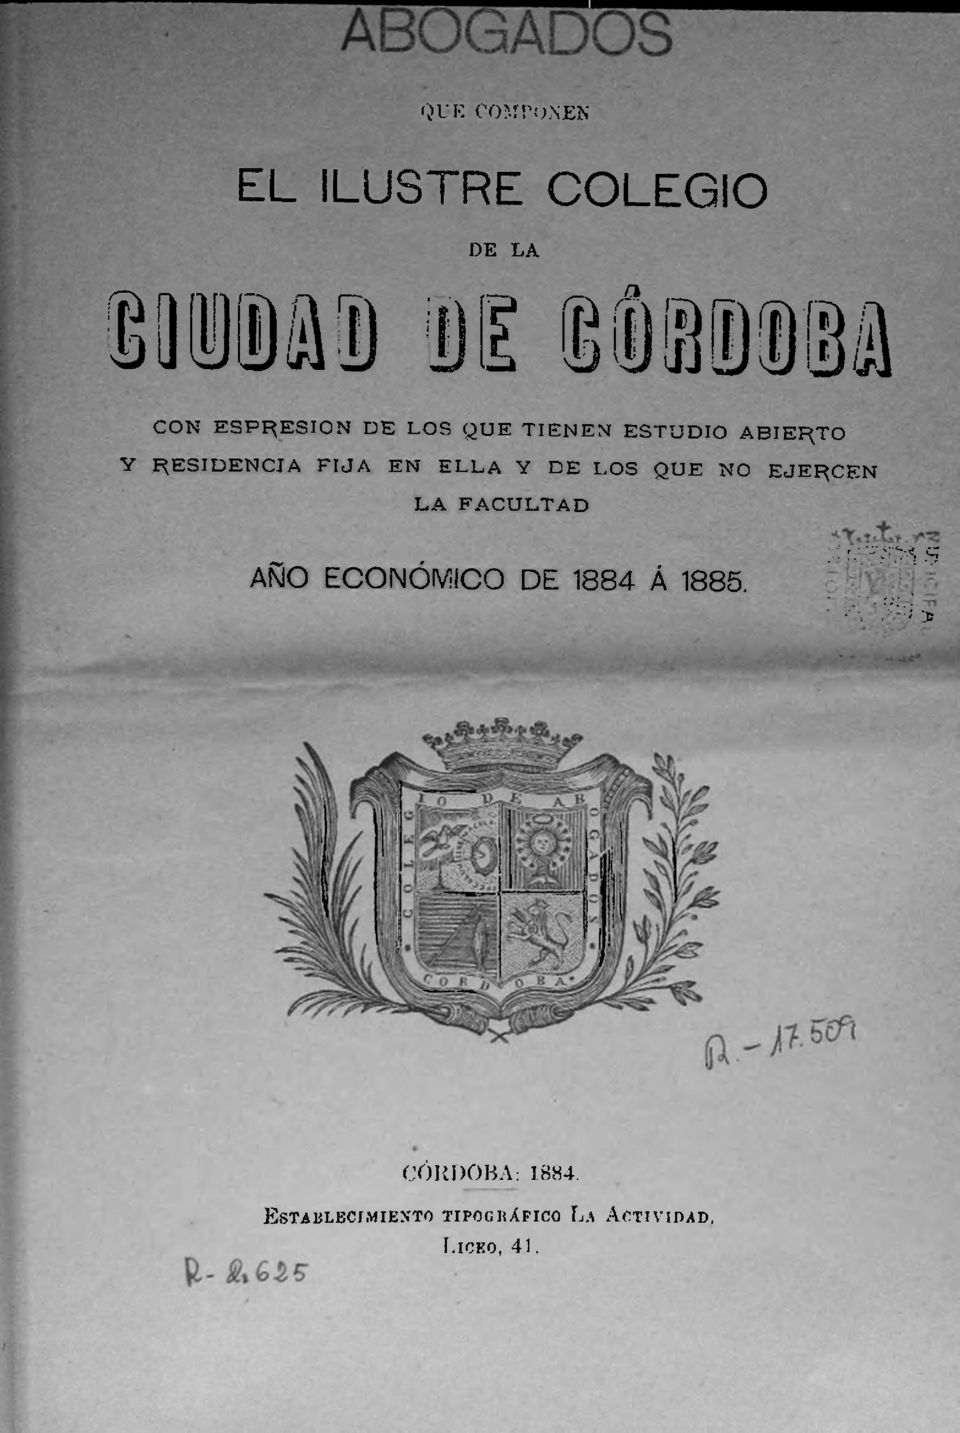 NO EJERCEN LA FACULTAD ' U jí J* 5 AÑO ECONÓMICO DE 1884 Á 1885.